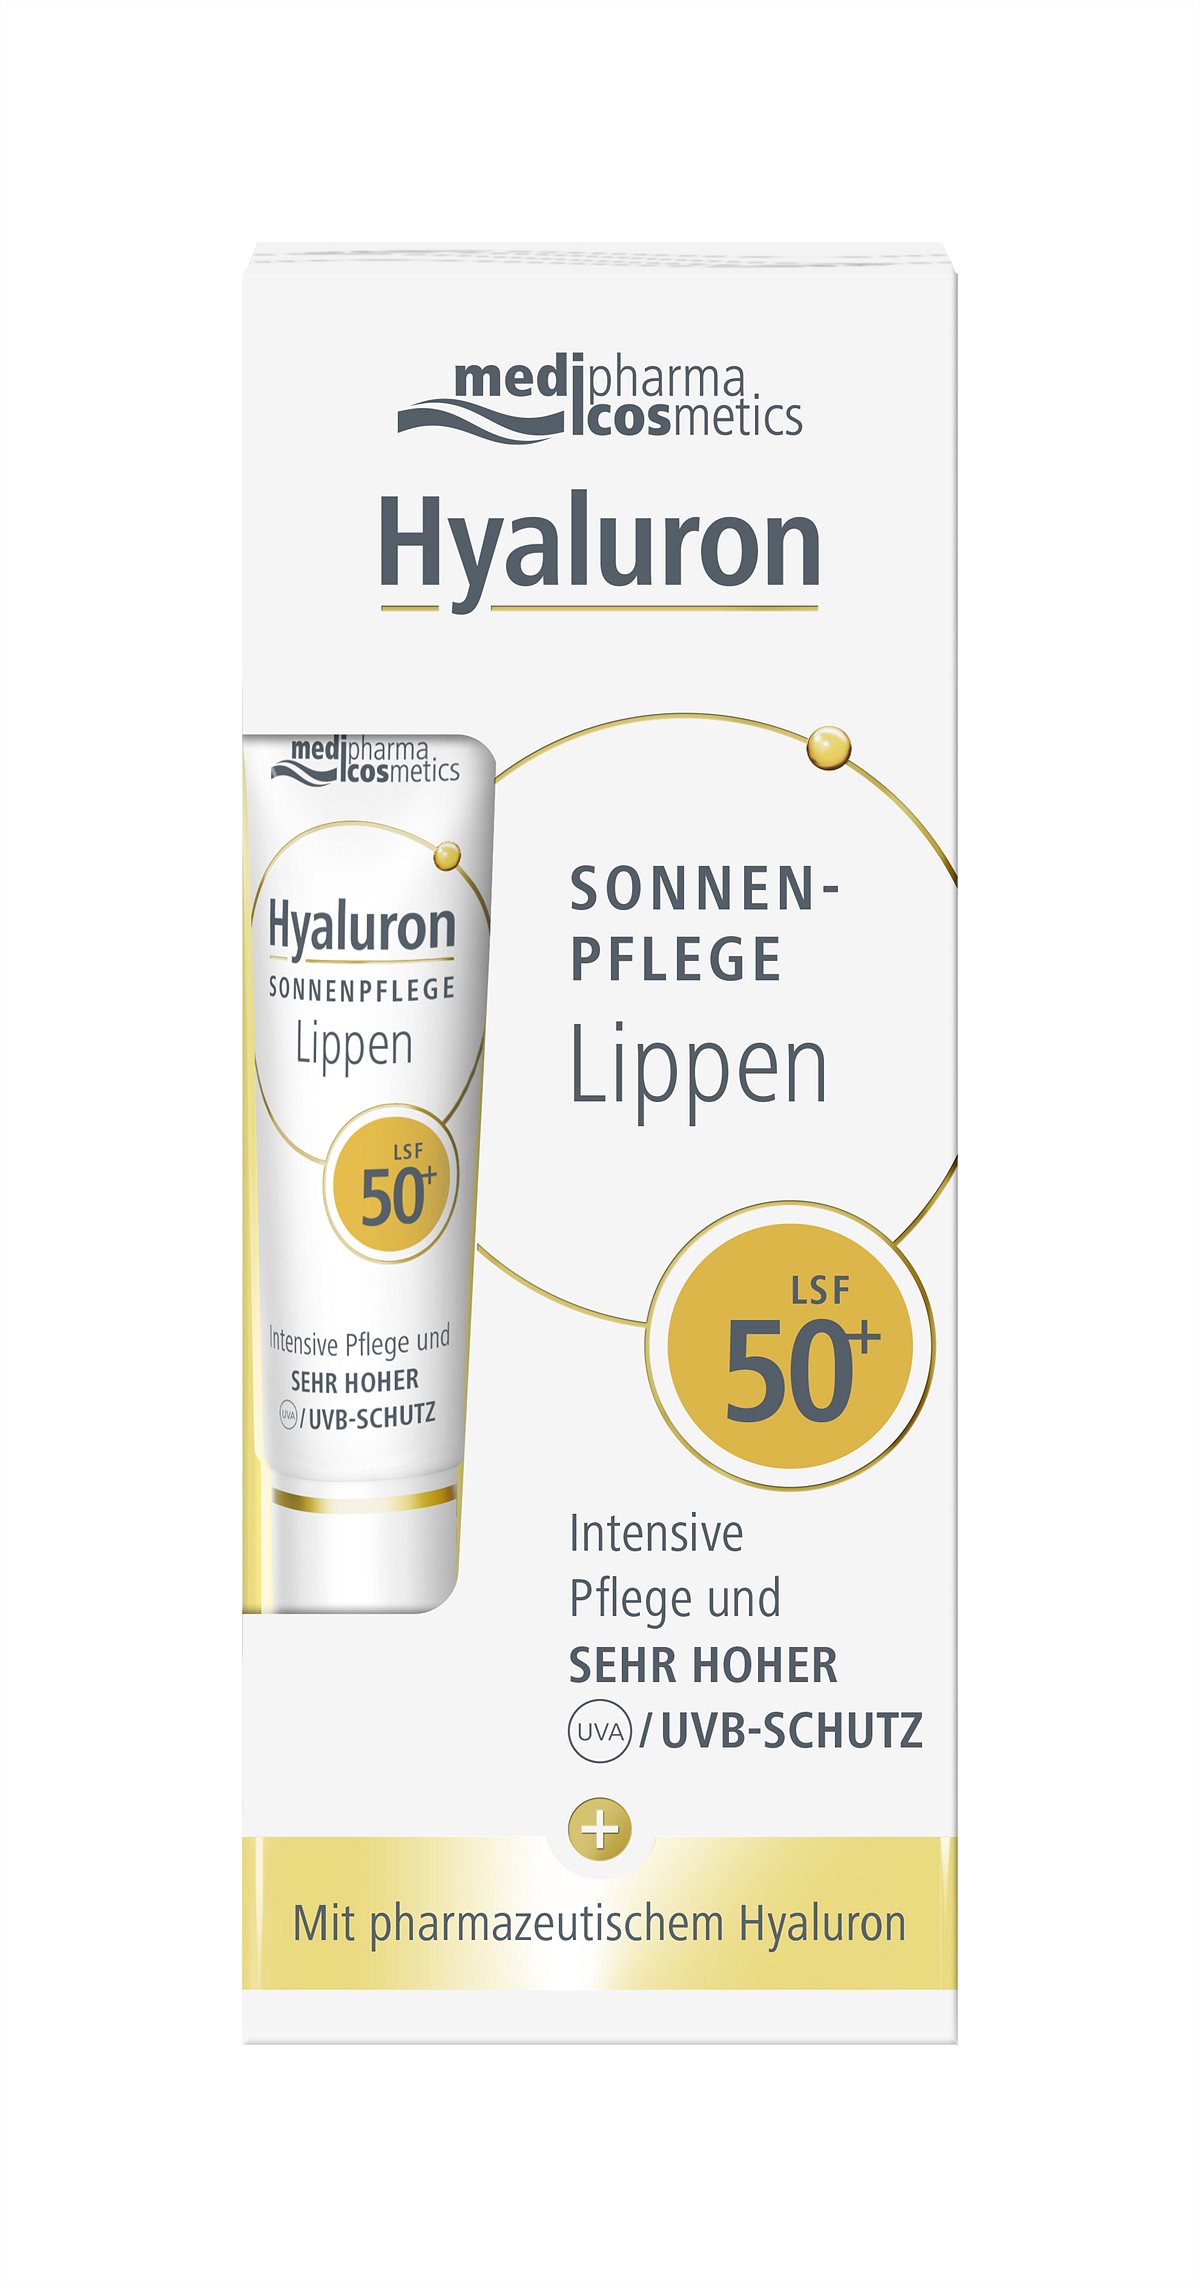 medipharma cosmetics Hyaluron SONNENPFLEGE Lippen LSF50 Box